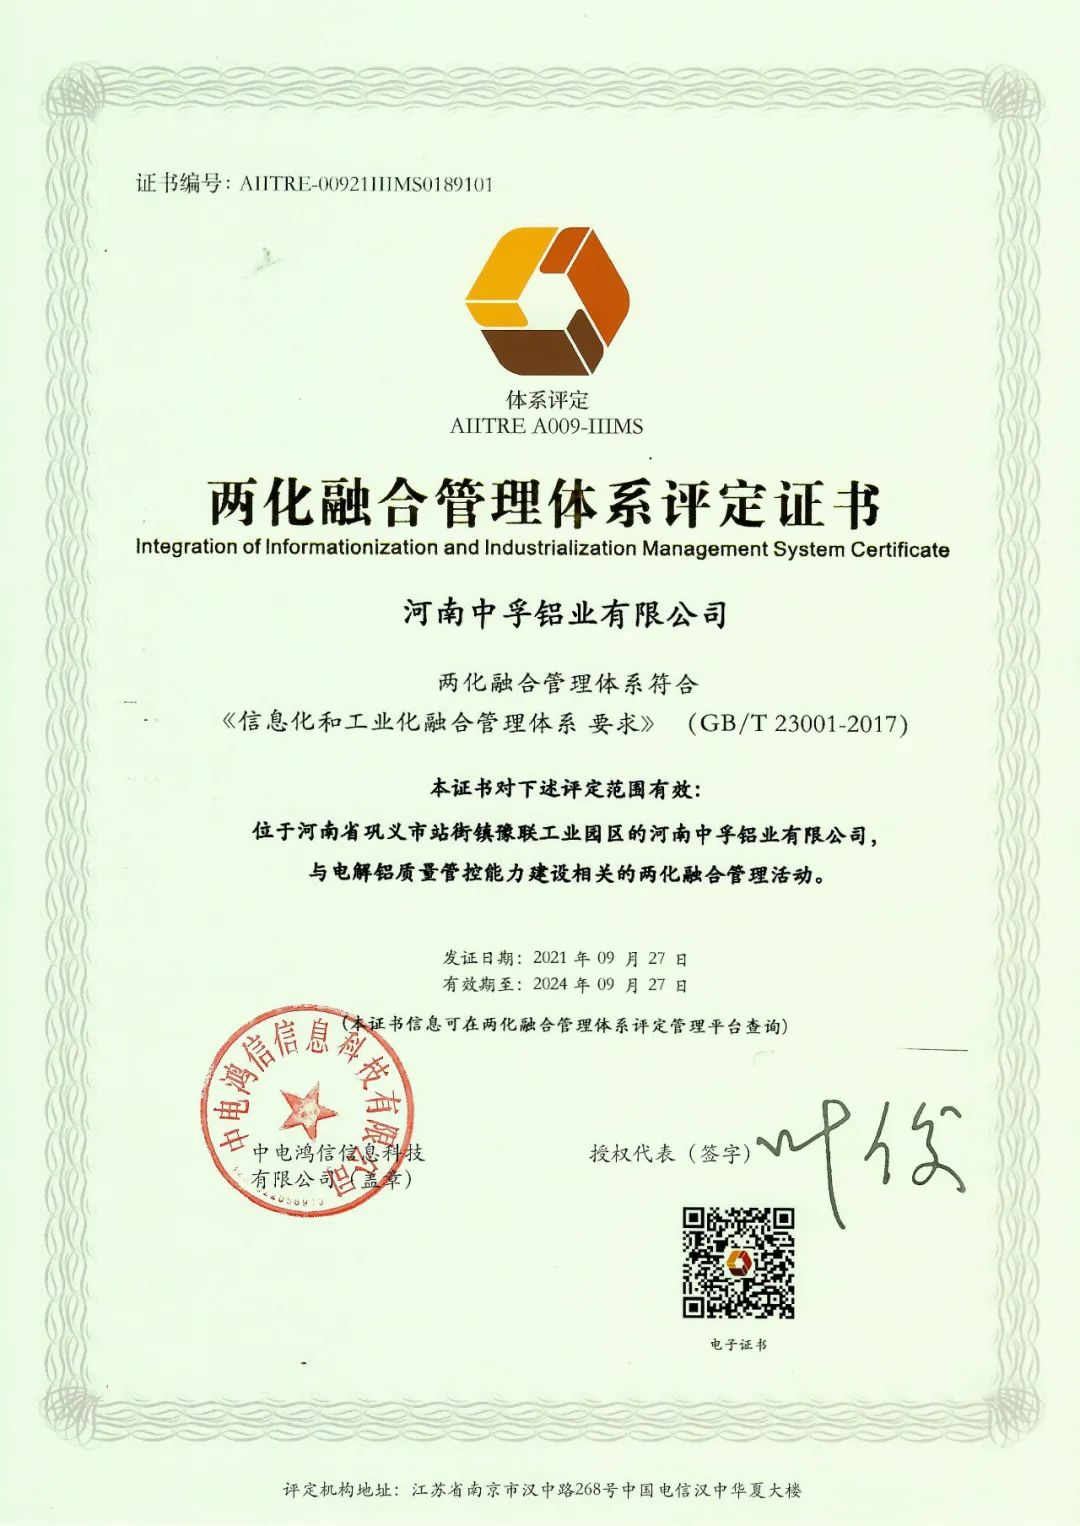 中孚铝业公司获得两化融合管理体系认证证书